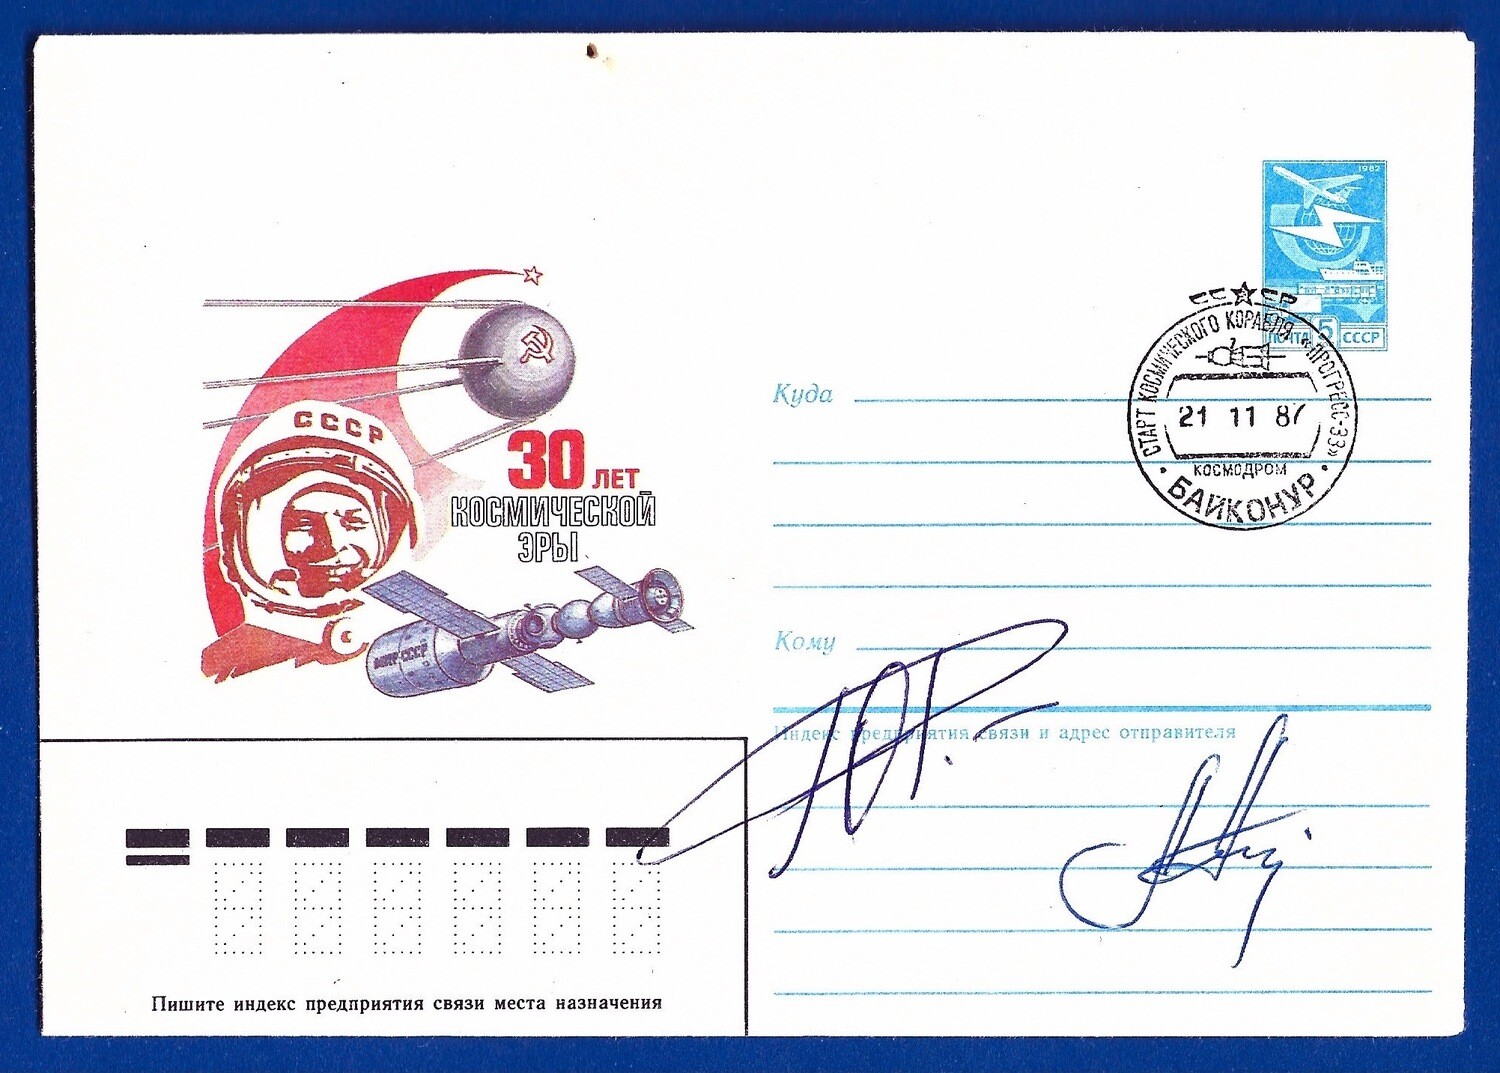 1987 Soyuz TM-2 & TM-3 crew signed cover